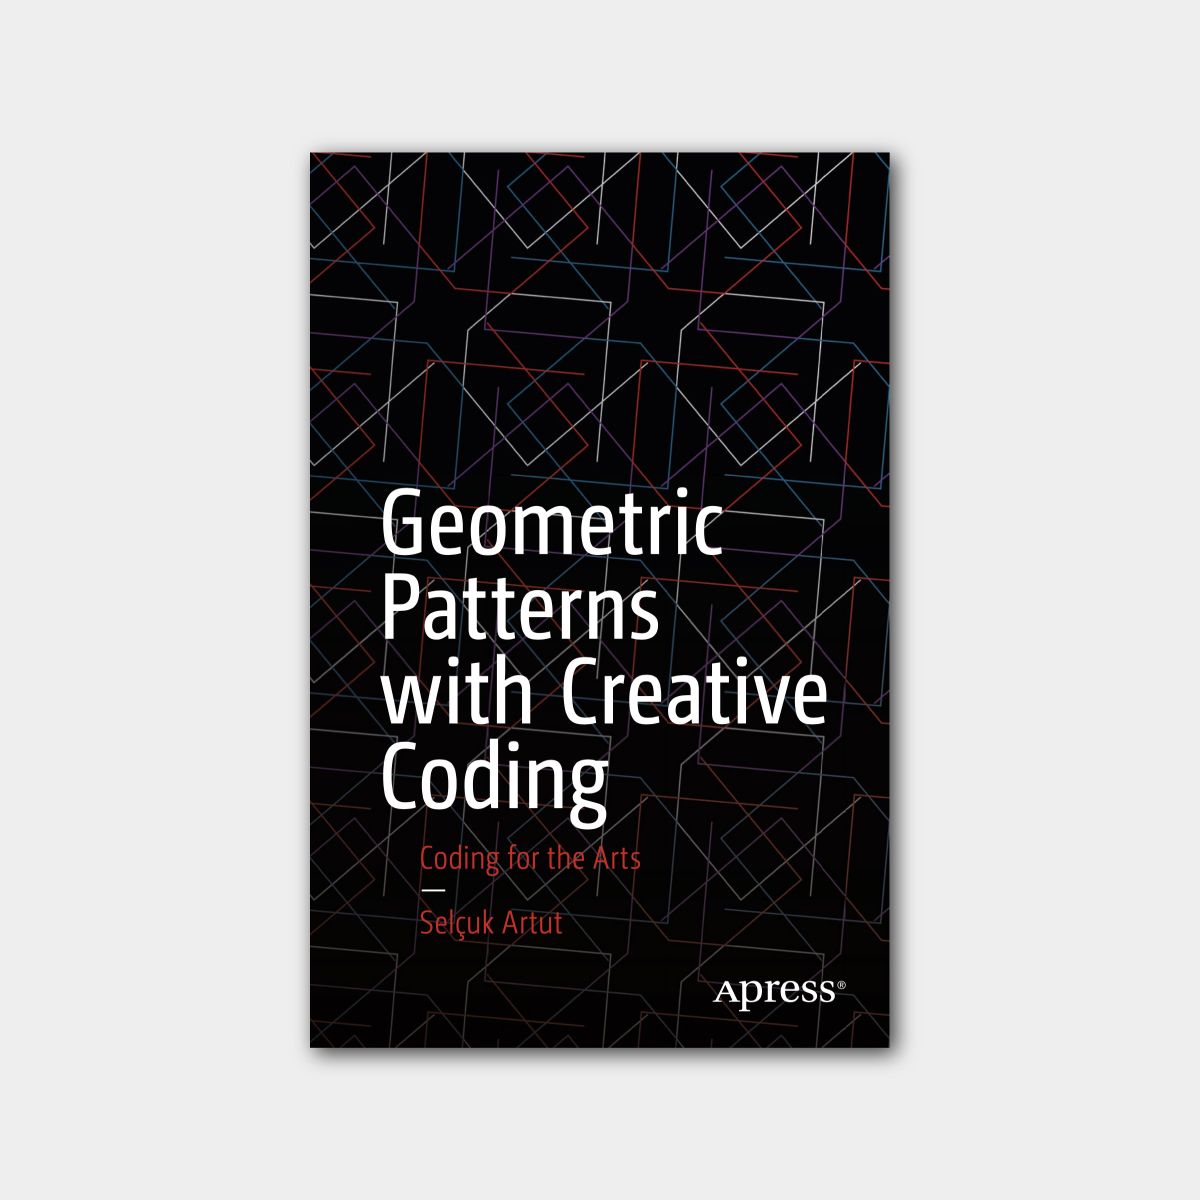 Geometric Patterns with Creative Coding

Yazar: Selçuk Artut

Yayınevi: Apress